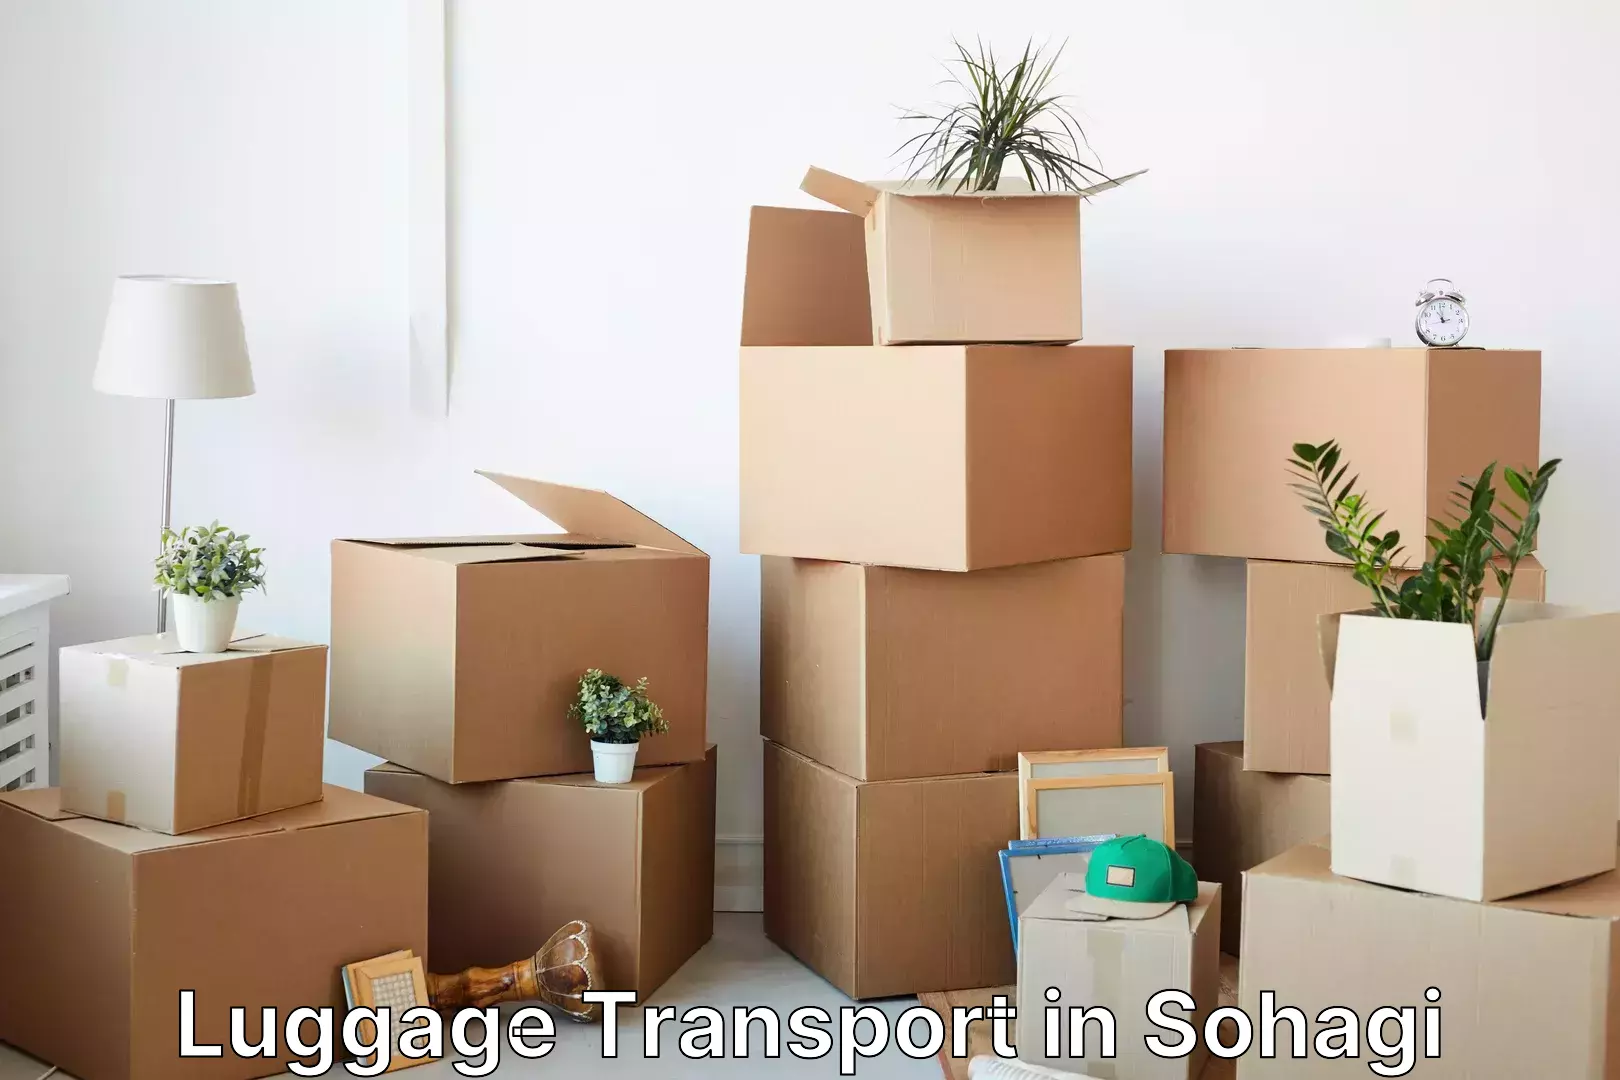 Luggage shipment processing in Sohagi